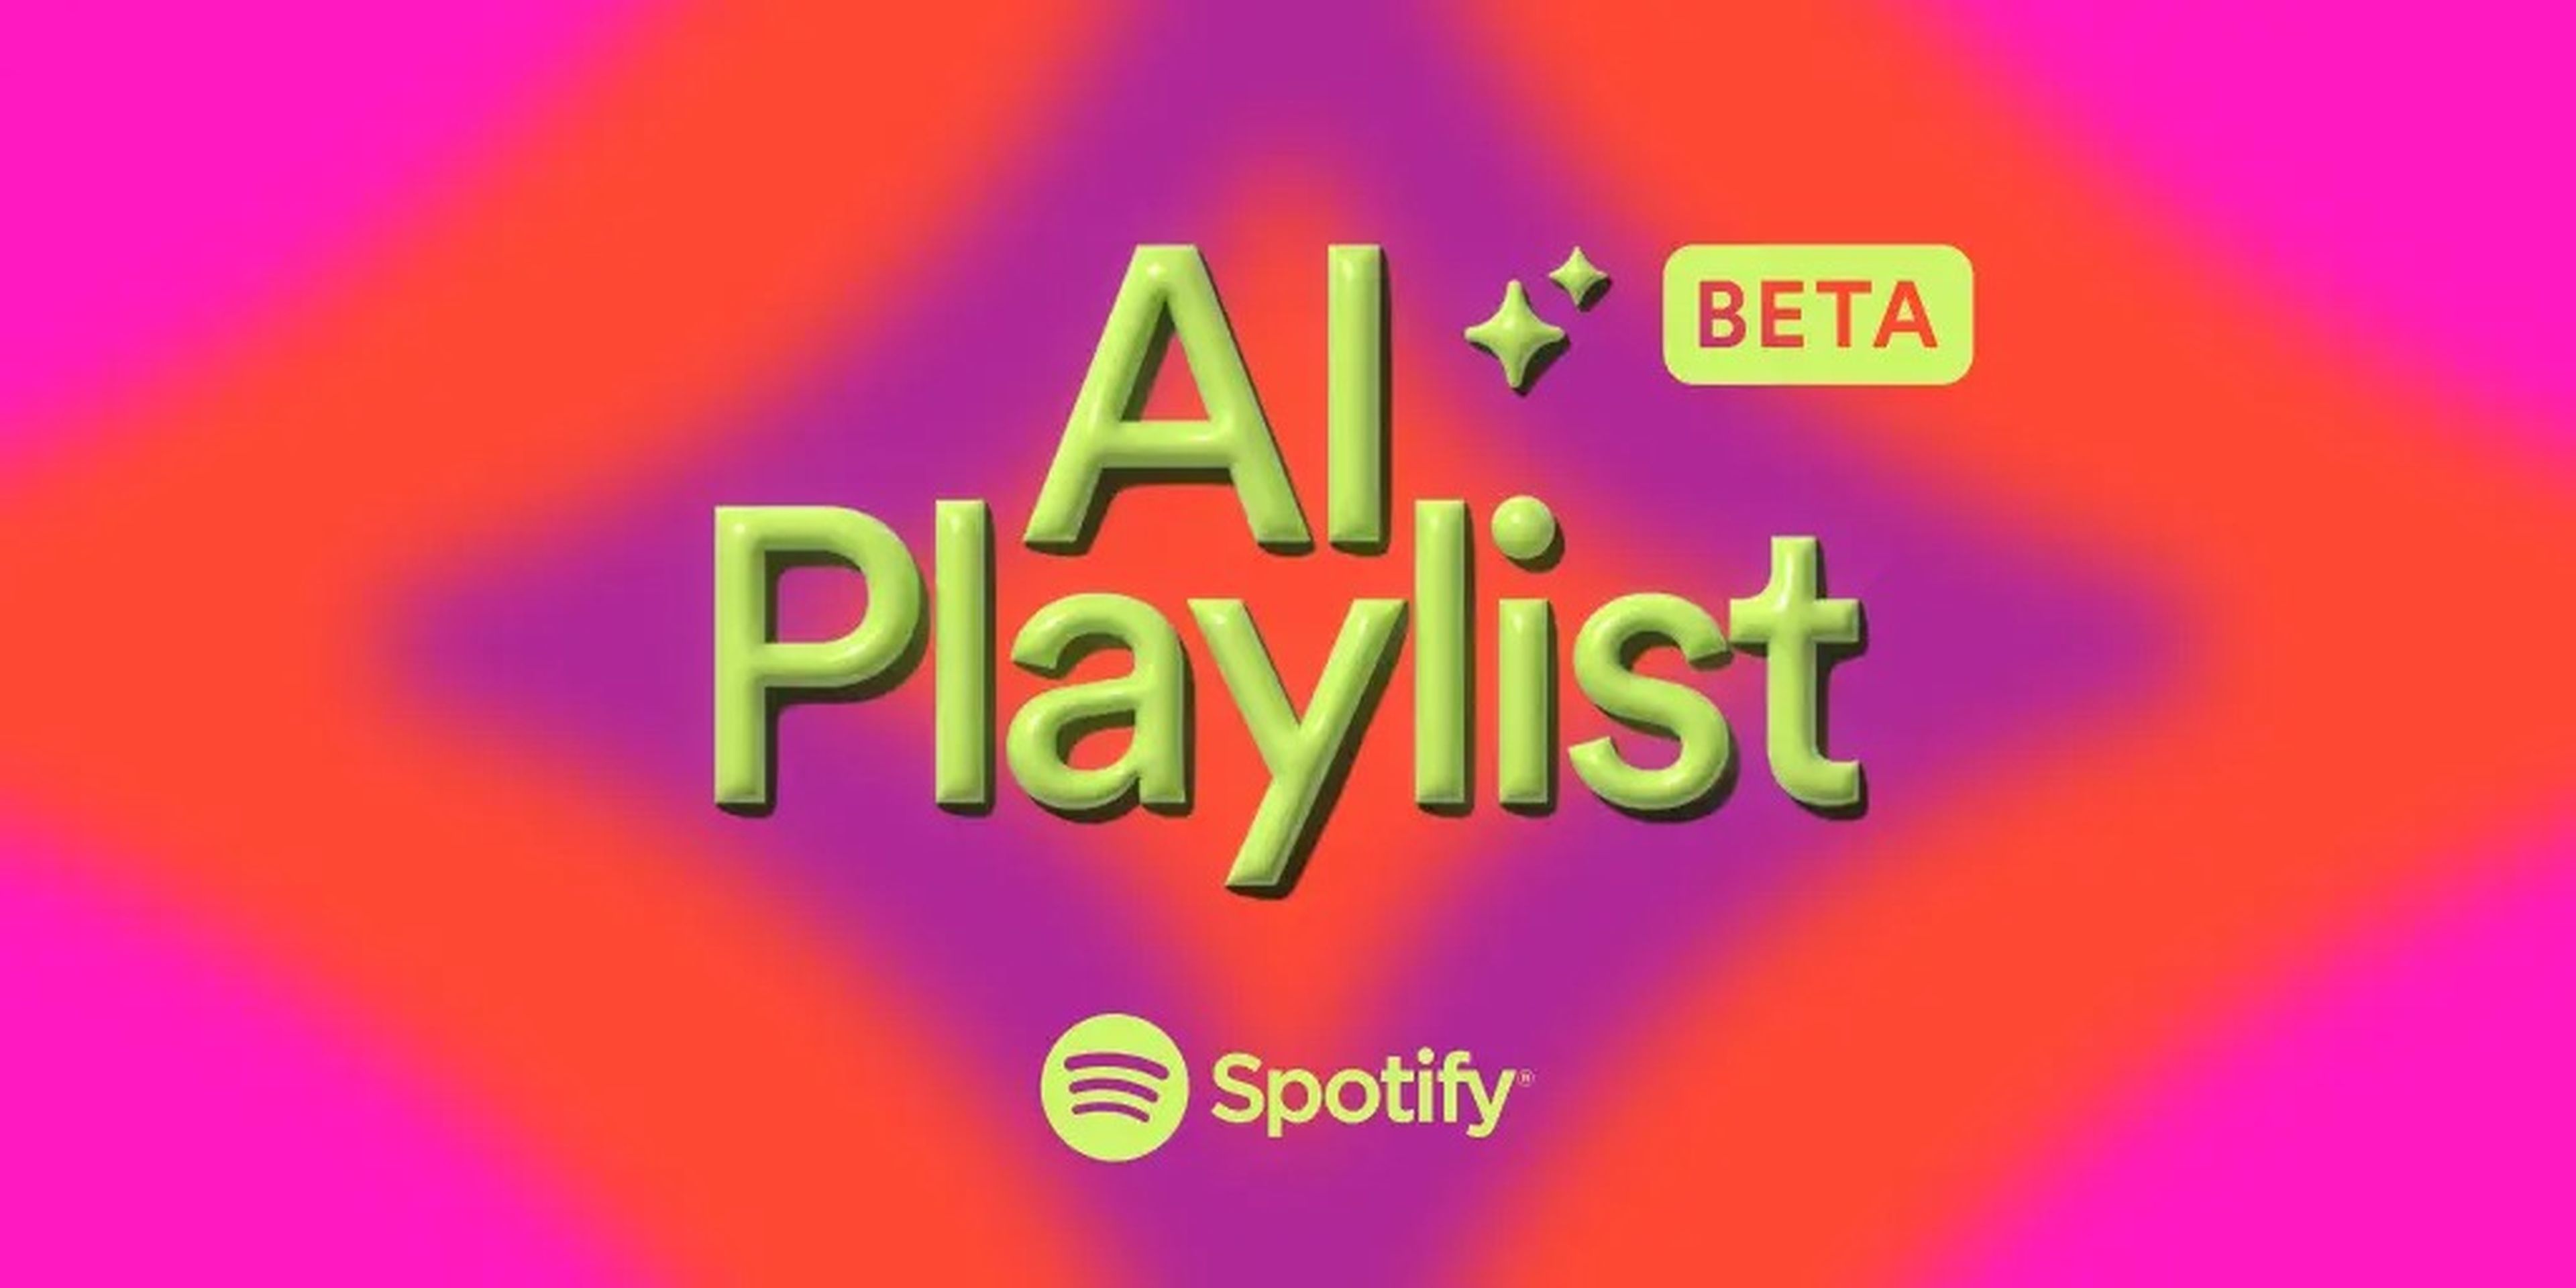 Spotify ha lanzado esta semana su AI Playlist en versión beta.